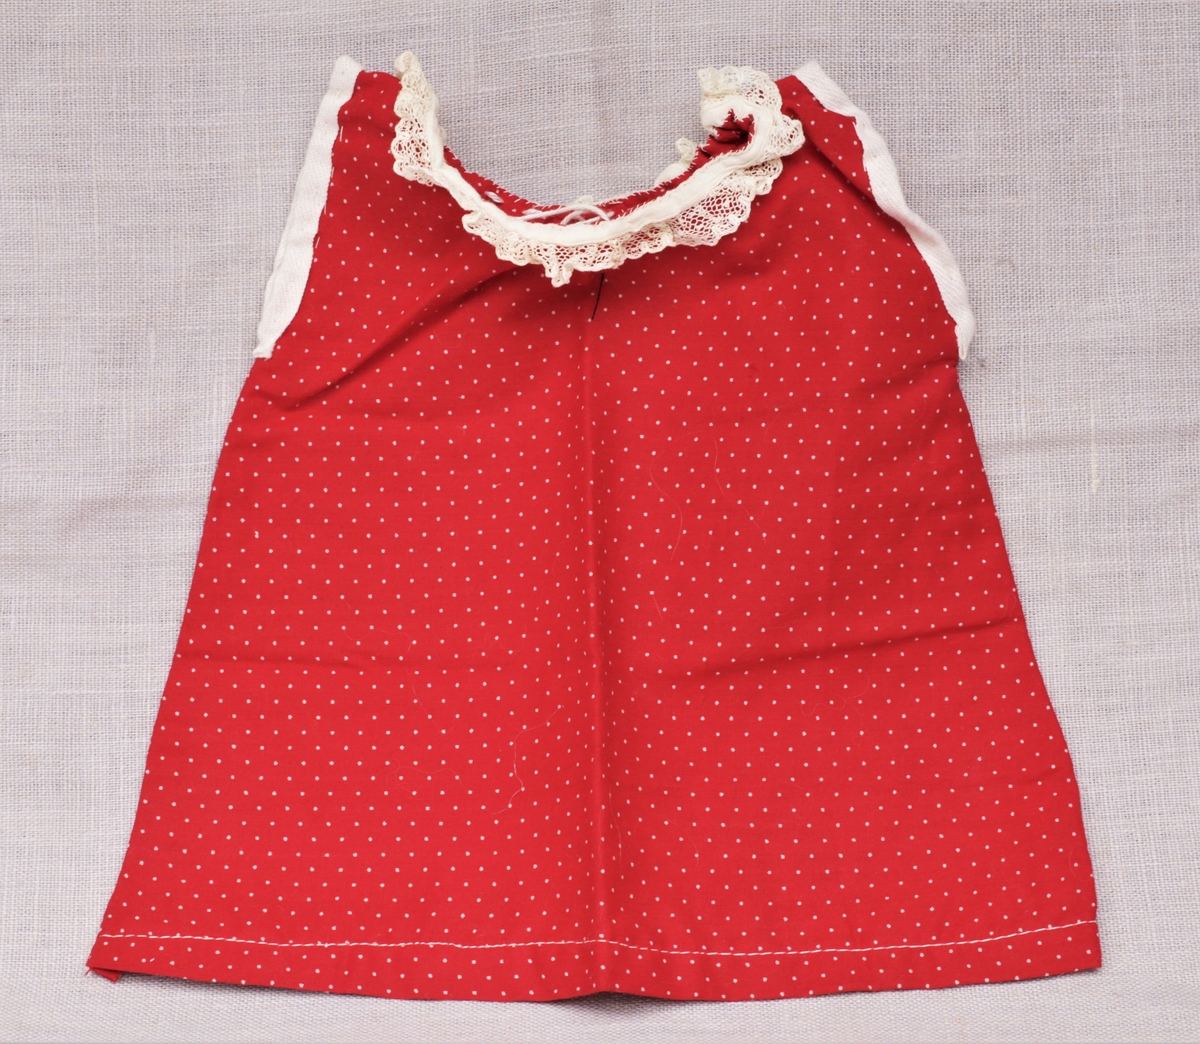 Tre enkle dukkekjoler, to rødprikkete (a og b) og en blårutet (c), en stråhatt (d), et bånd (e). Rød kjole (b) uten ermer, med hvite kanter.